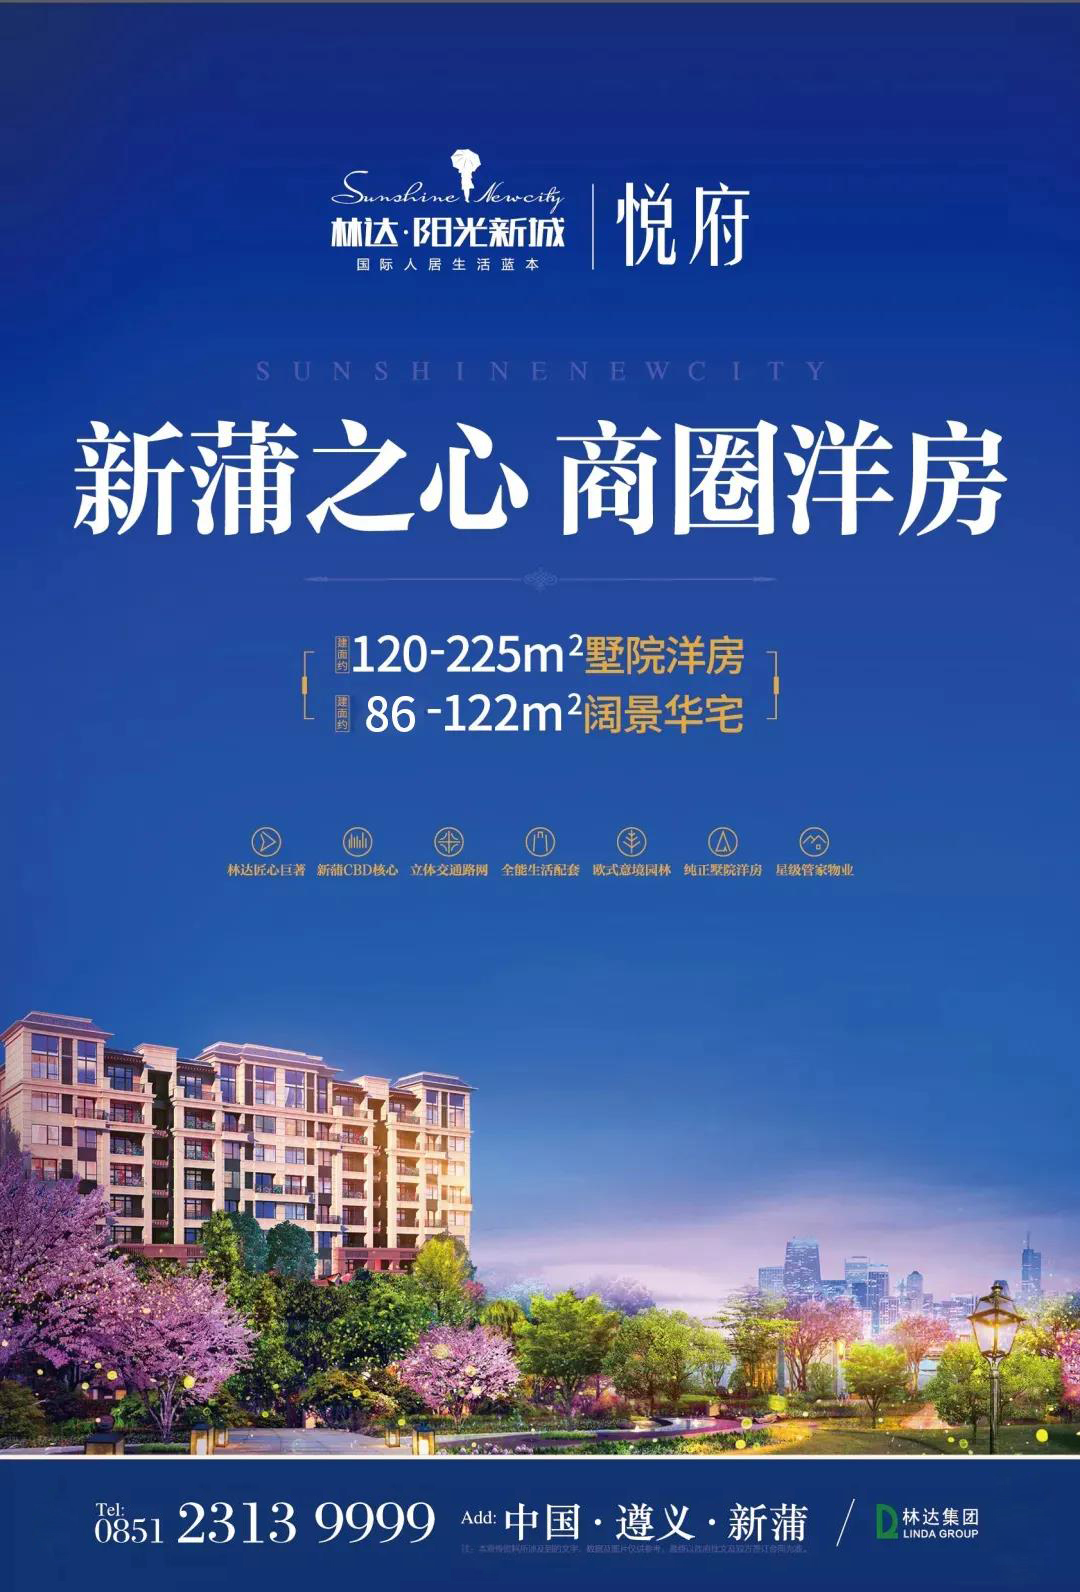 林达·阳光新城：十一狂欢月 盛惠8重礼-中国网地产